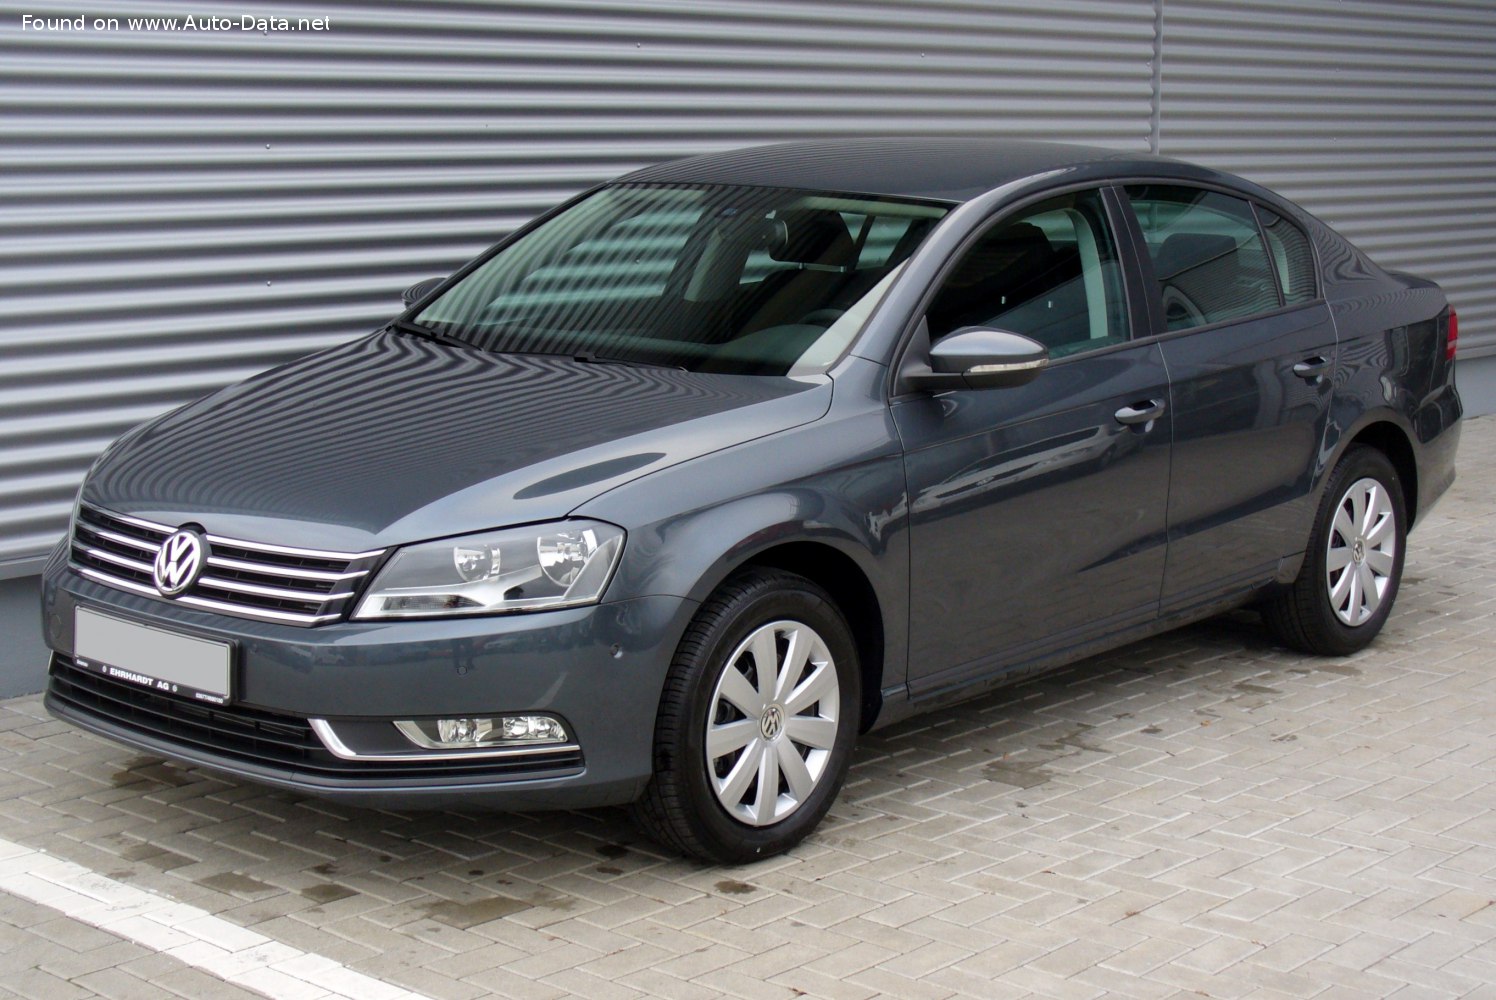 2010 Volkswagen Passat (B7) 2.0 TDI (140 Hp)  Technical specs, data, fuel  consumption, Dimensions